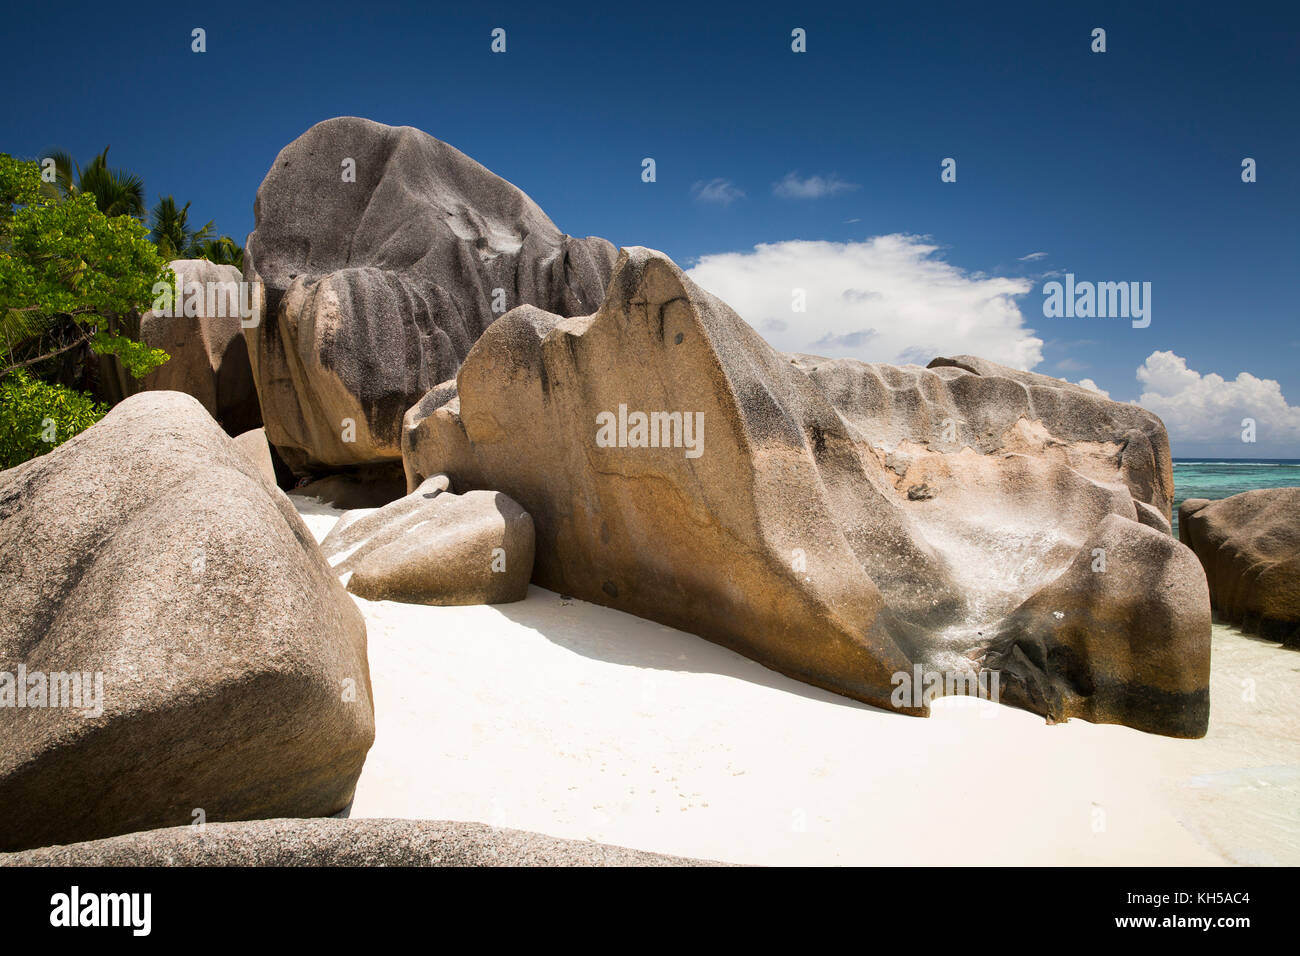 The Seychelles, La Digue, L’Union Estate, rocks at Anse Source d’Argent beach Stock Photo